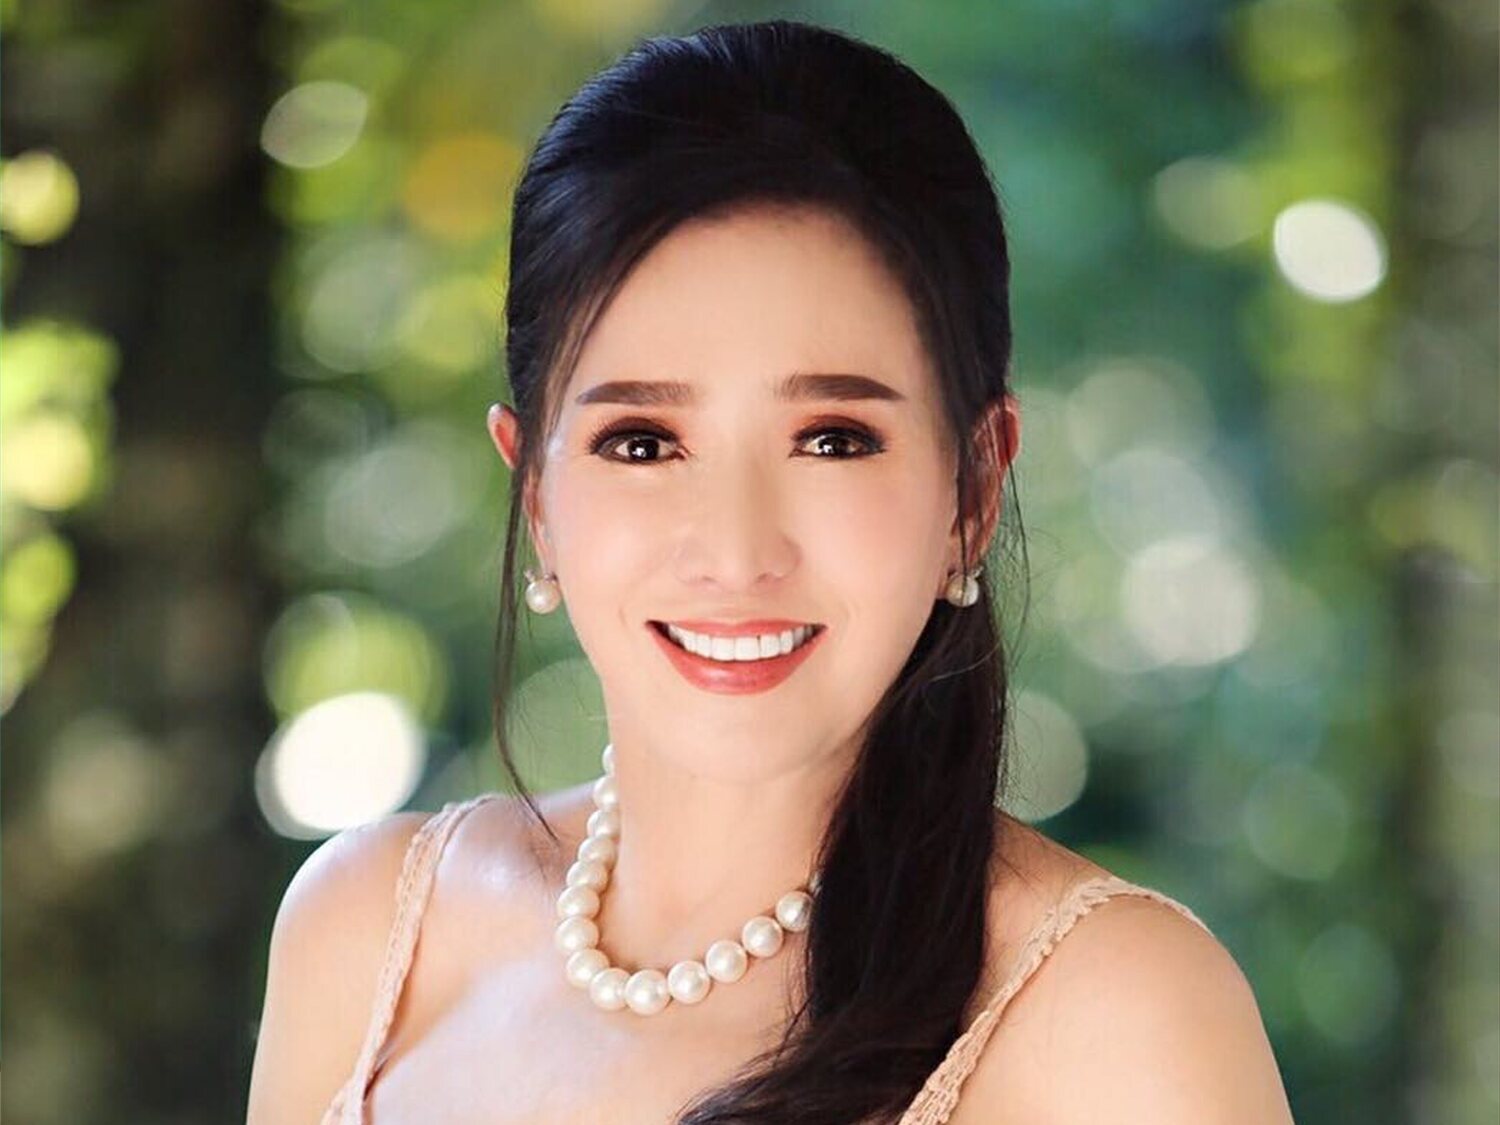 Tiene 75 años y aparenta 30: el secreto de Apasra, ex Miss Universo tailandesa